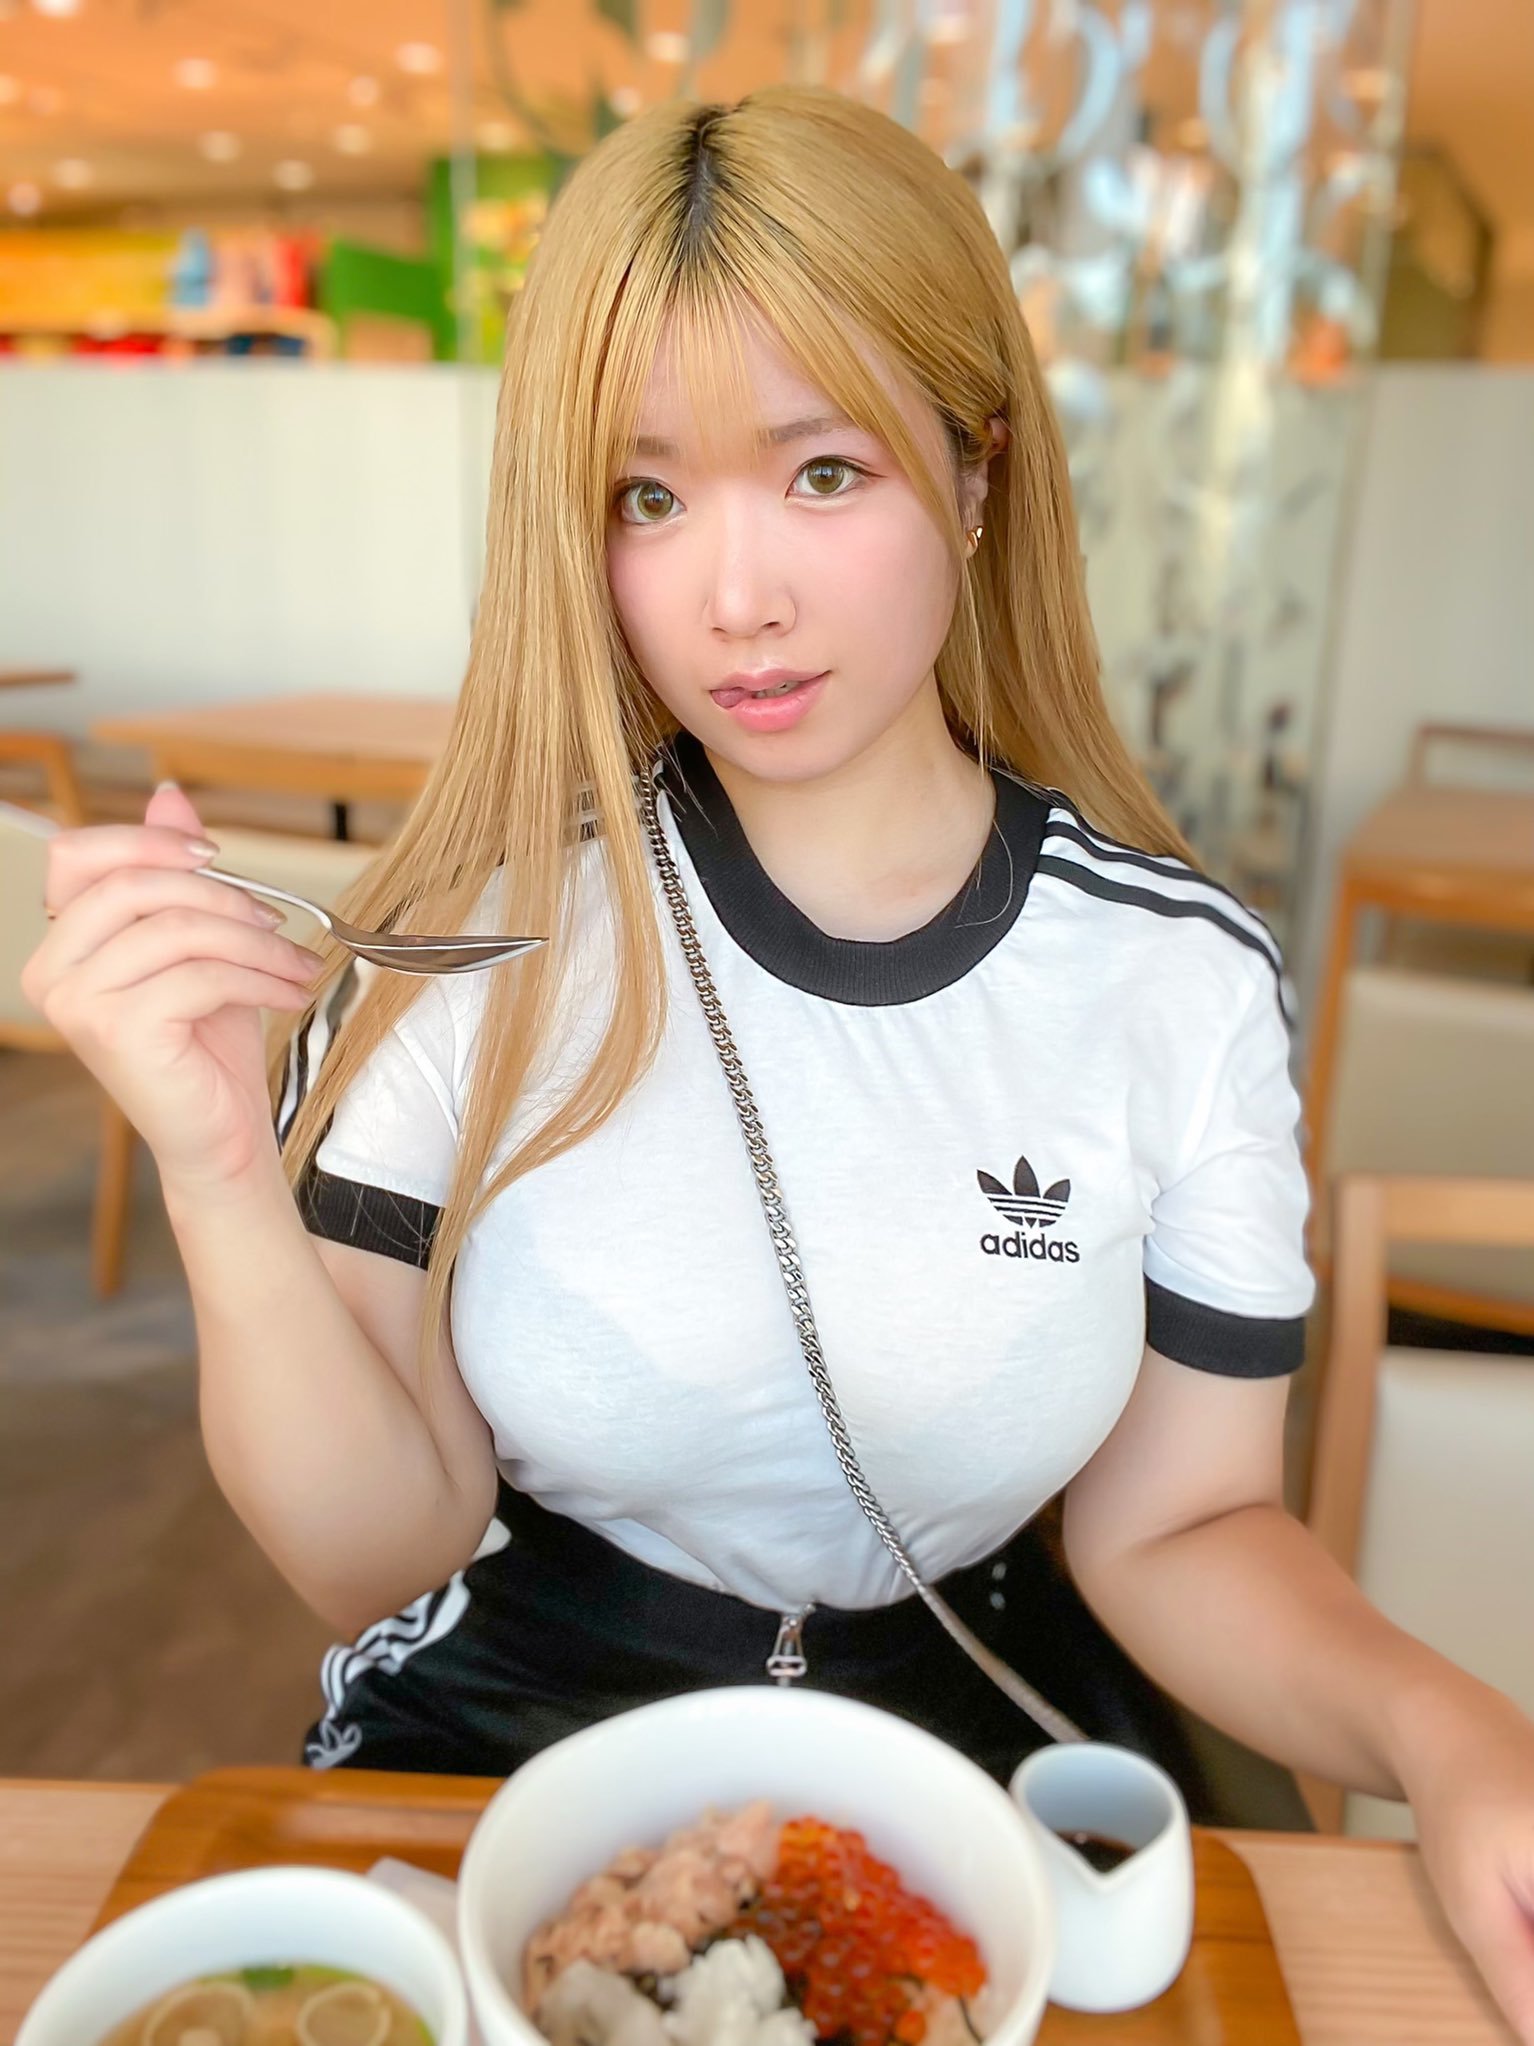 Yutori loves to eat - NSFW, Girls, Asian, Boobs, Food, Plus size, Erotic, Japanese, Longpost, Fullness